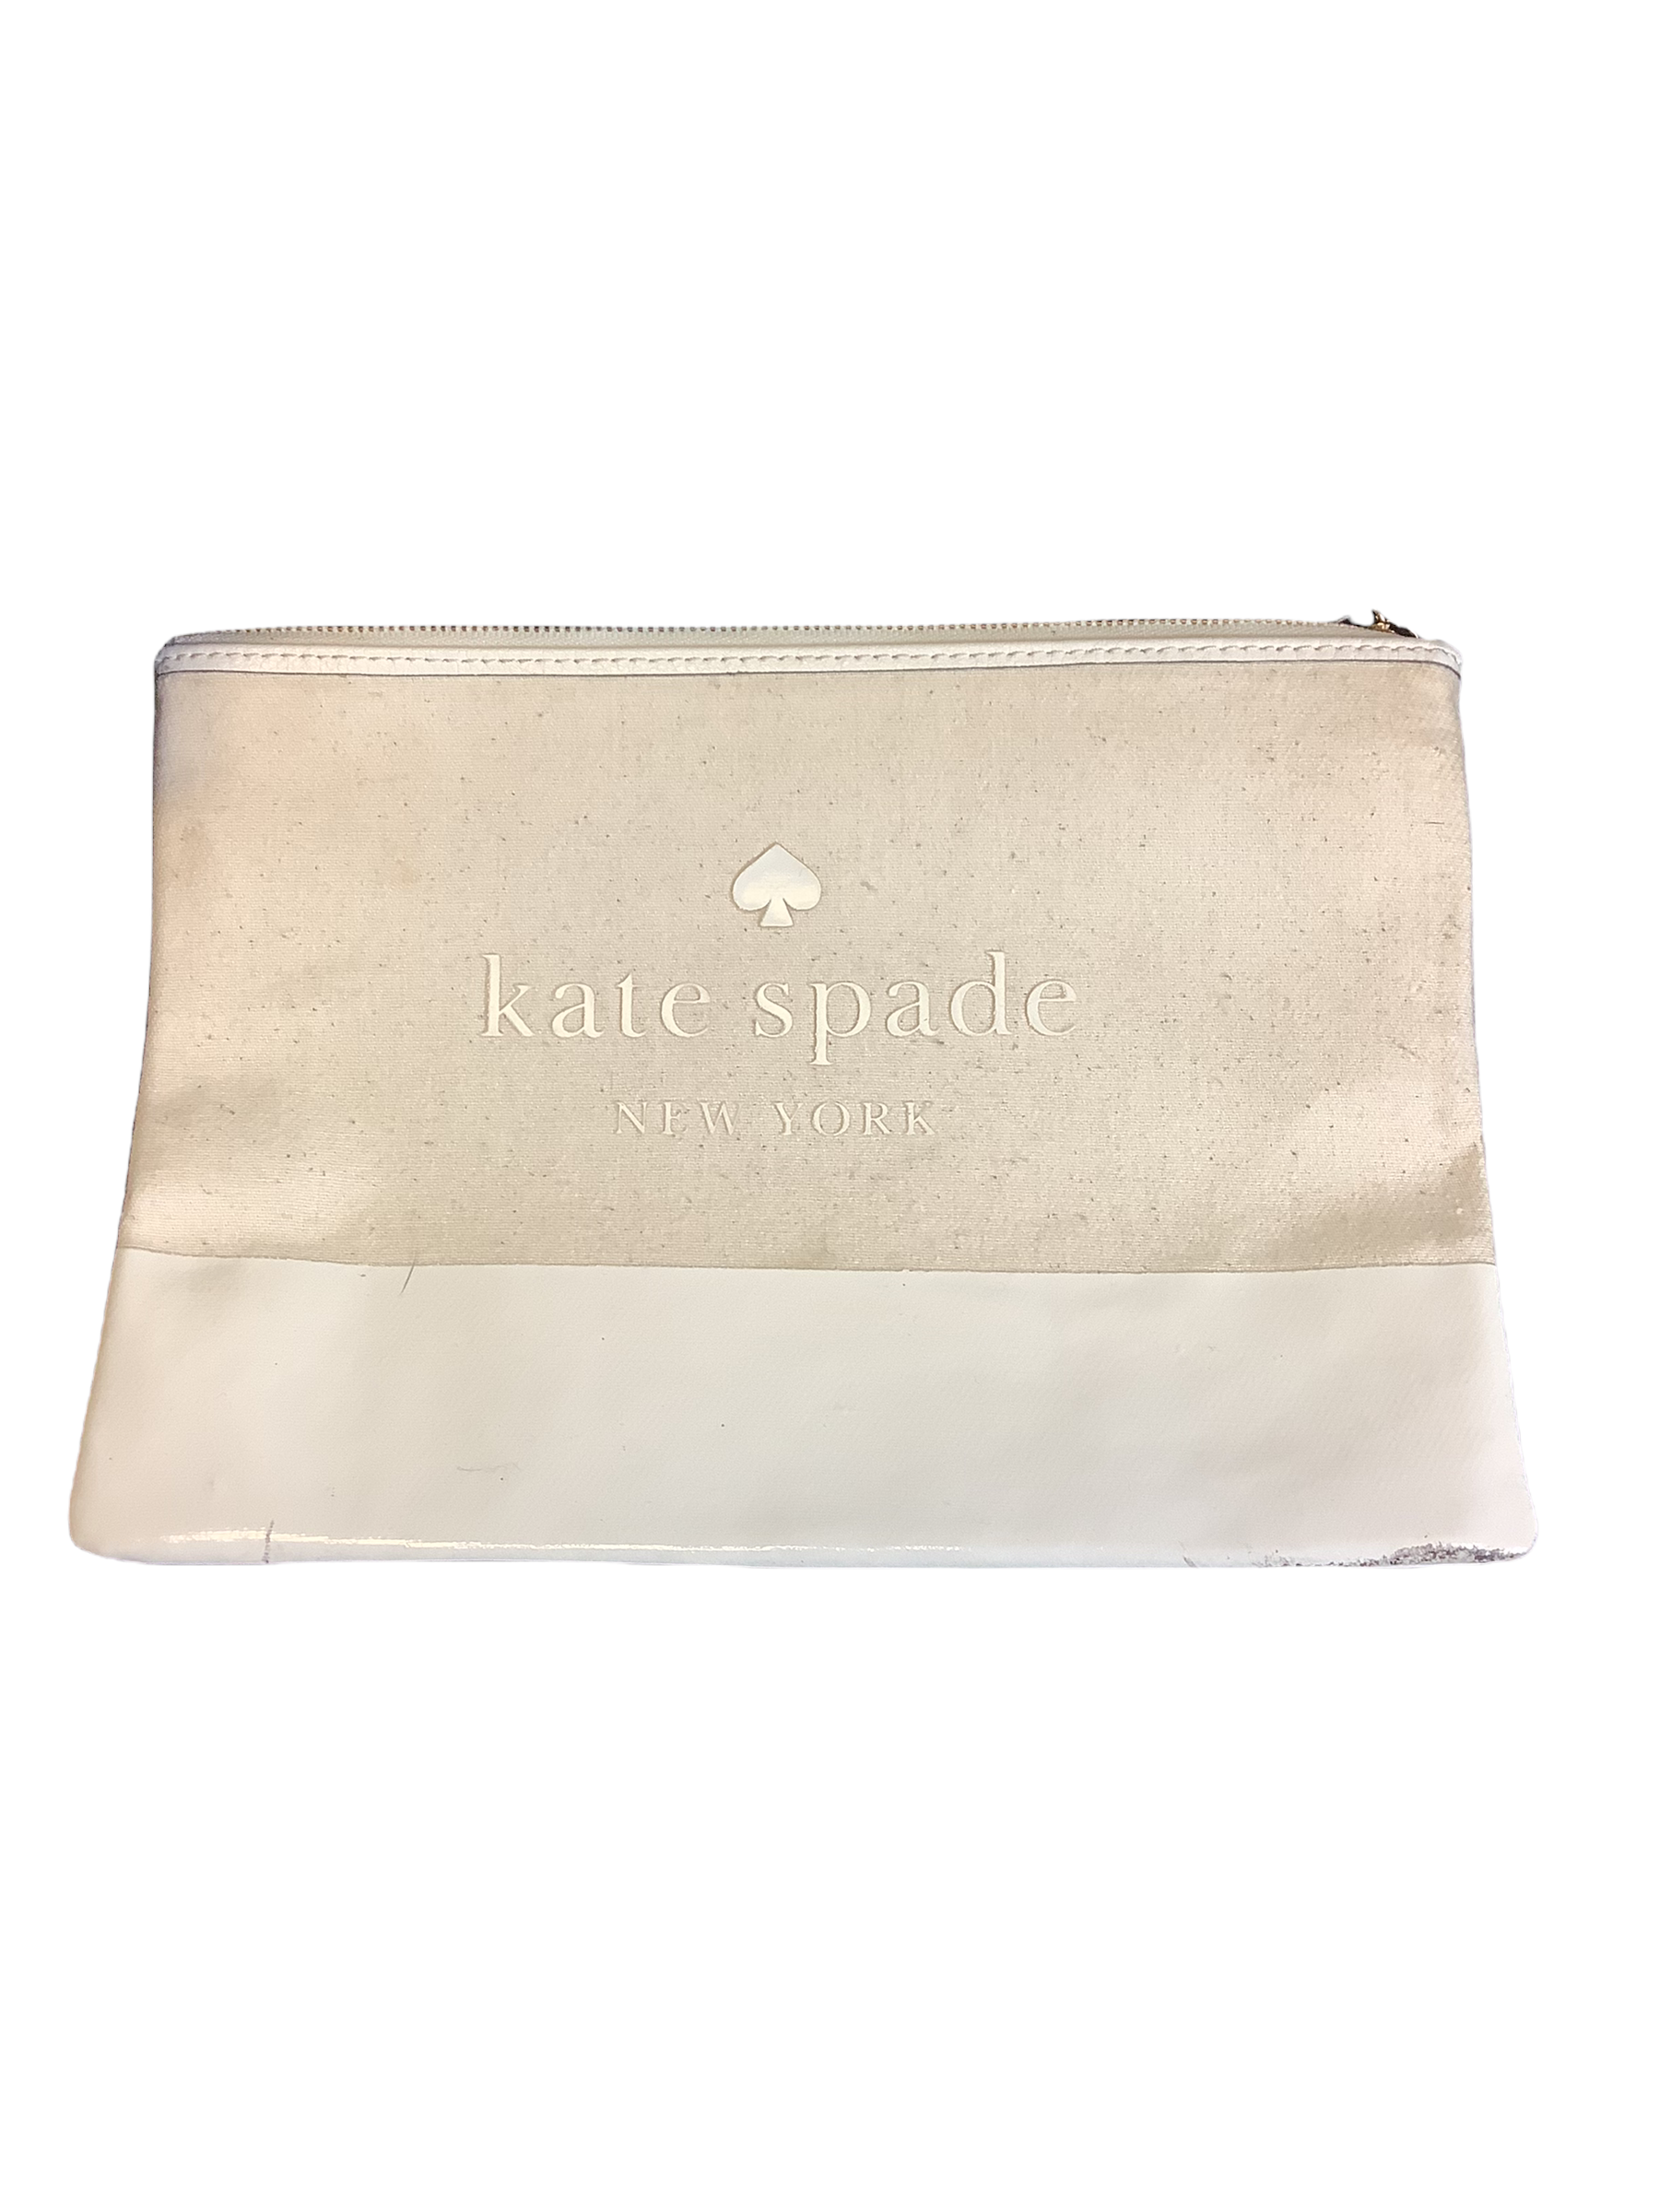 Makeup Bag By Kate Spade – Clothes Mentor Spartanburg SC #210